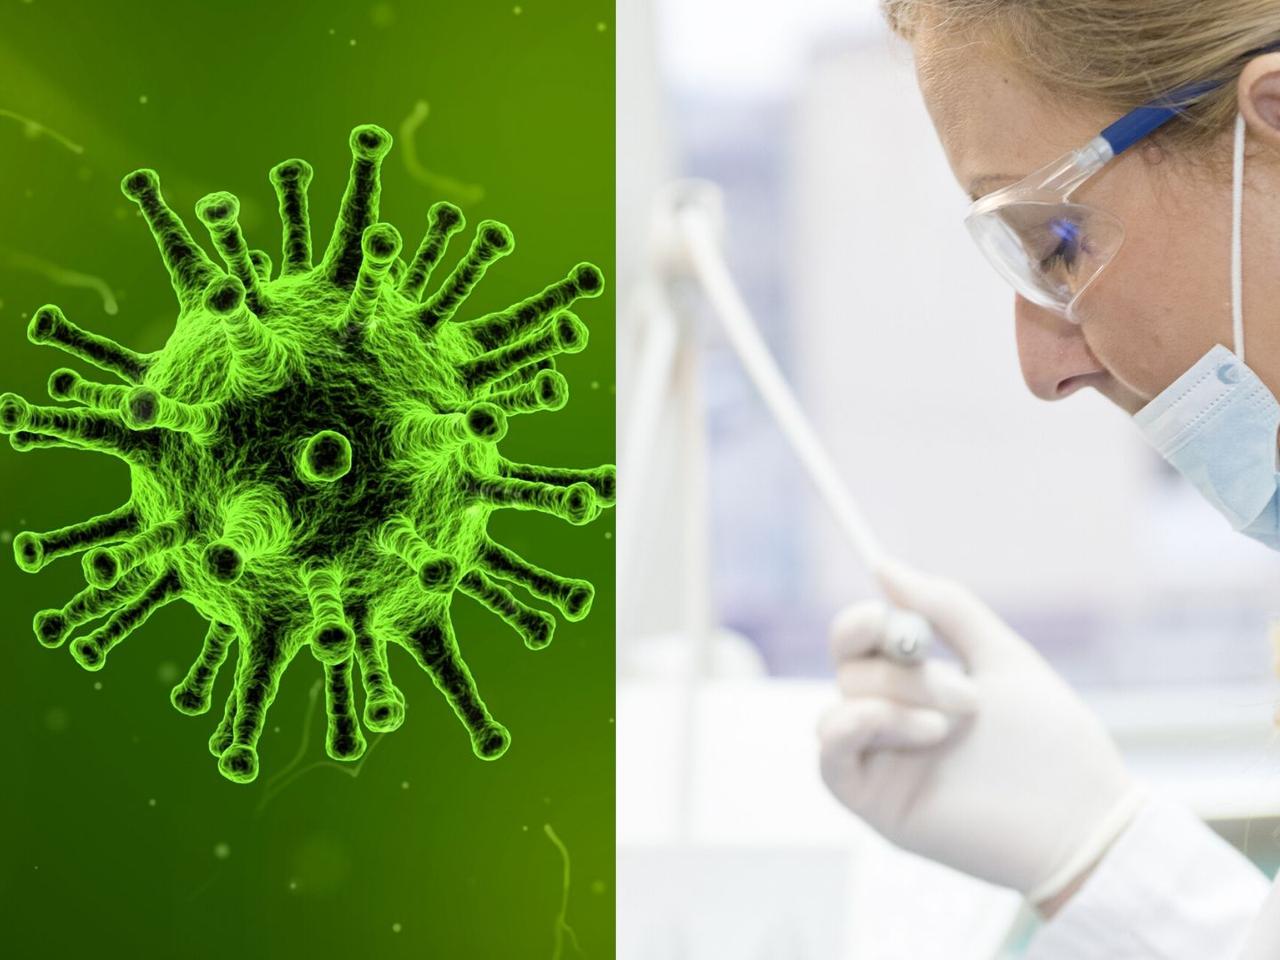 Jakie są objawy zarażenia koronawirusem? Jak postępować, podejrzewając u siebie chorobę?